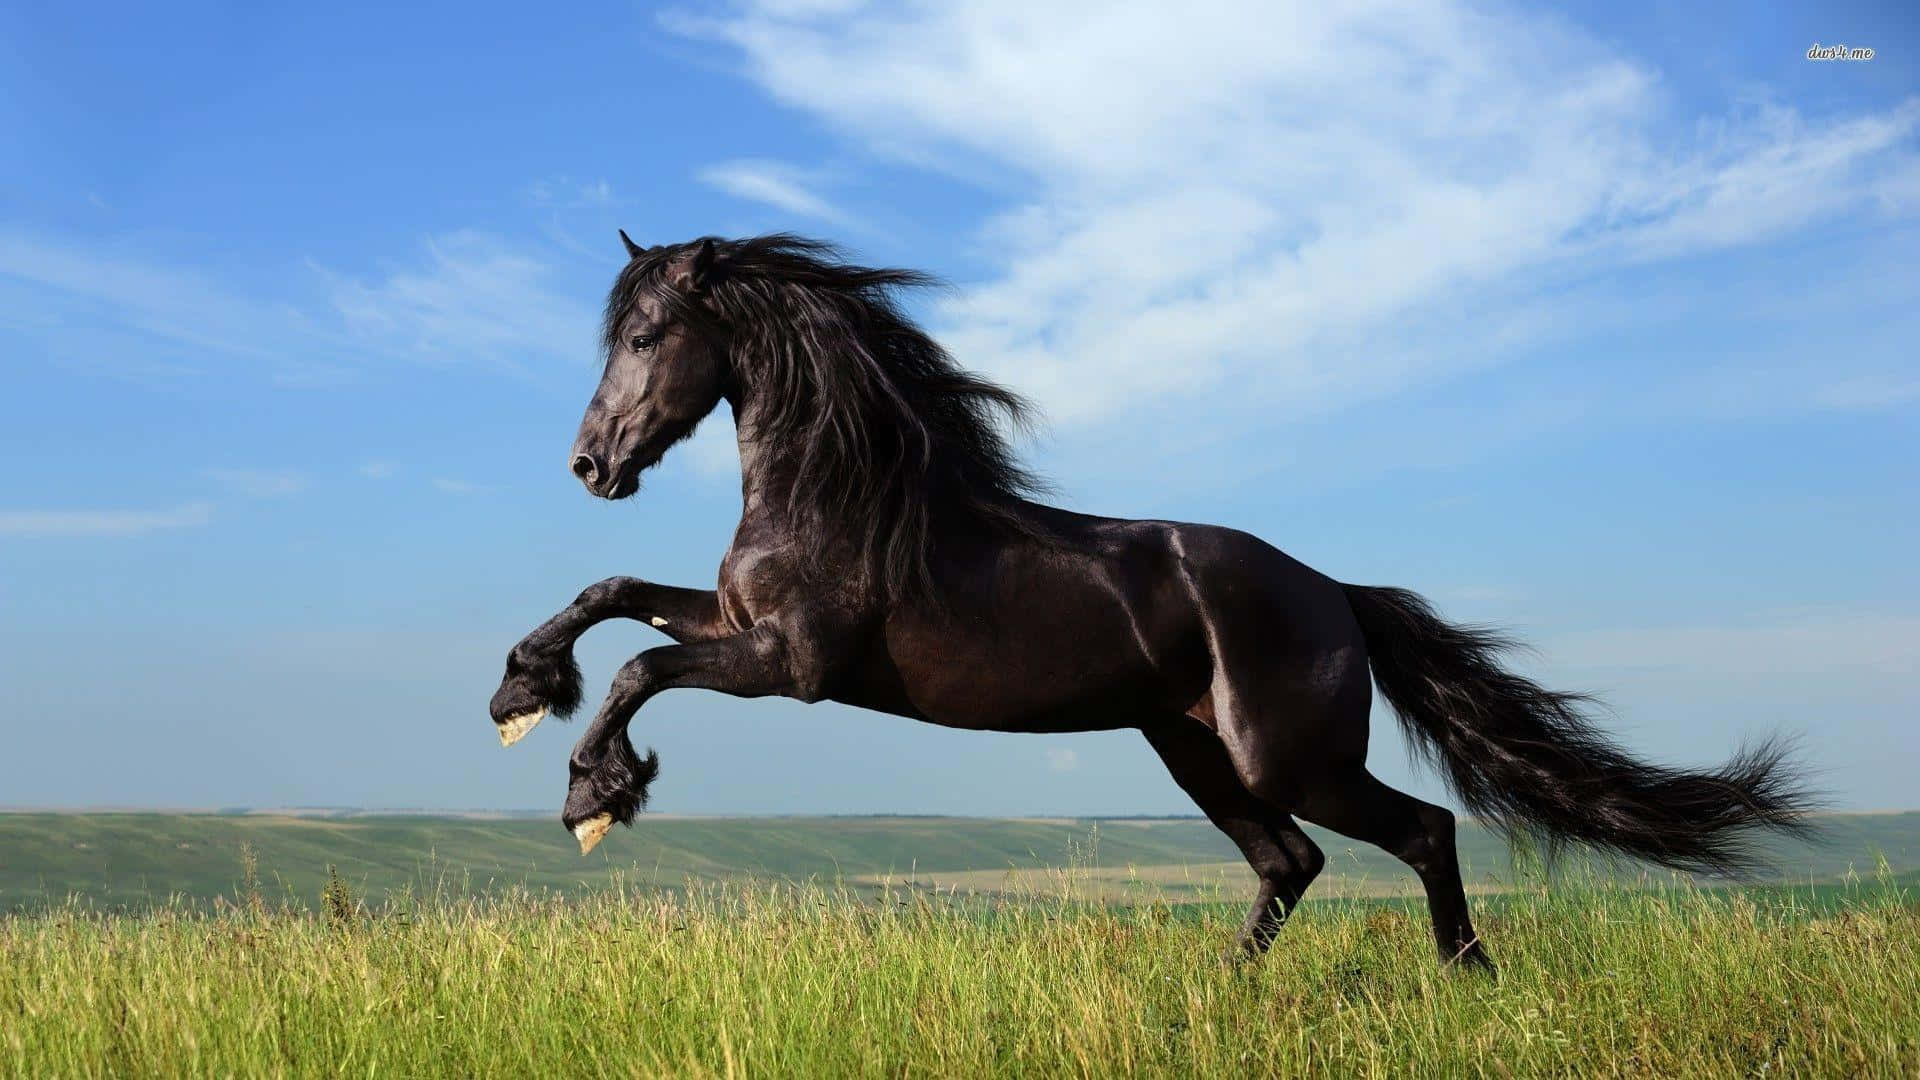 "A wild black horse running through the plains."